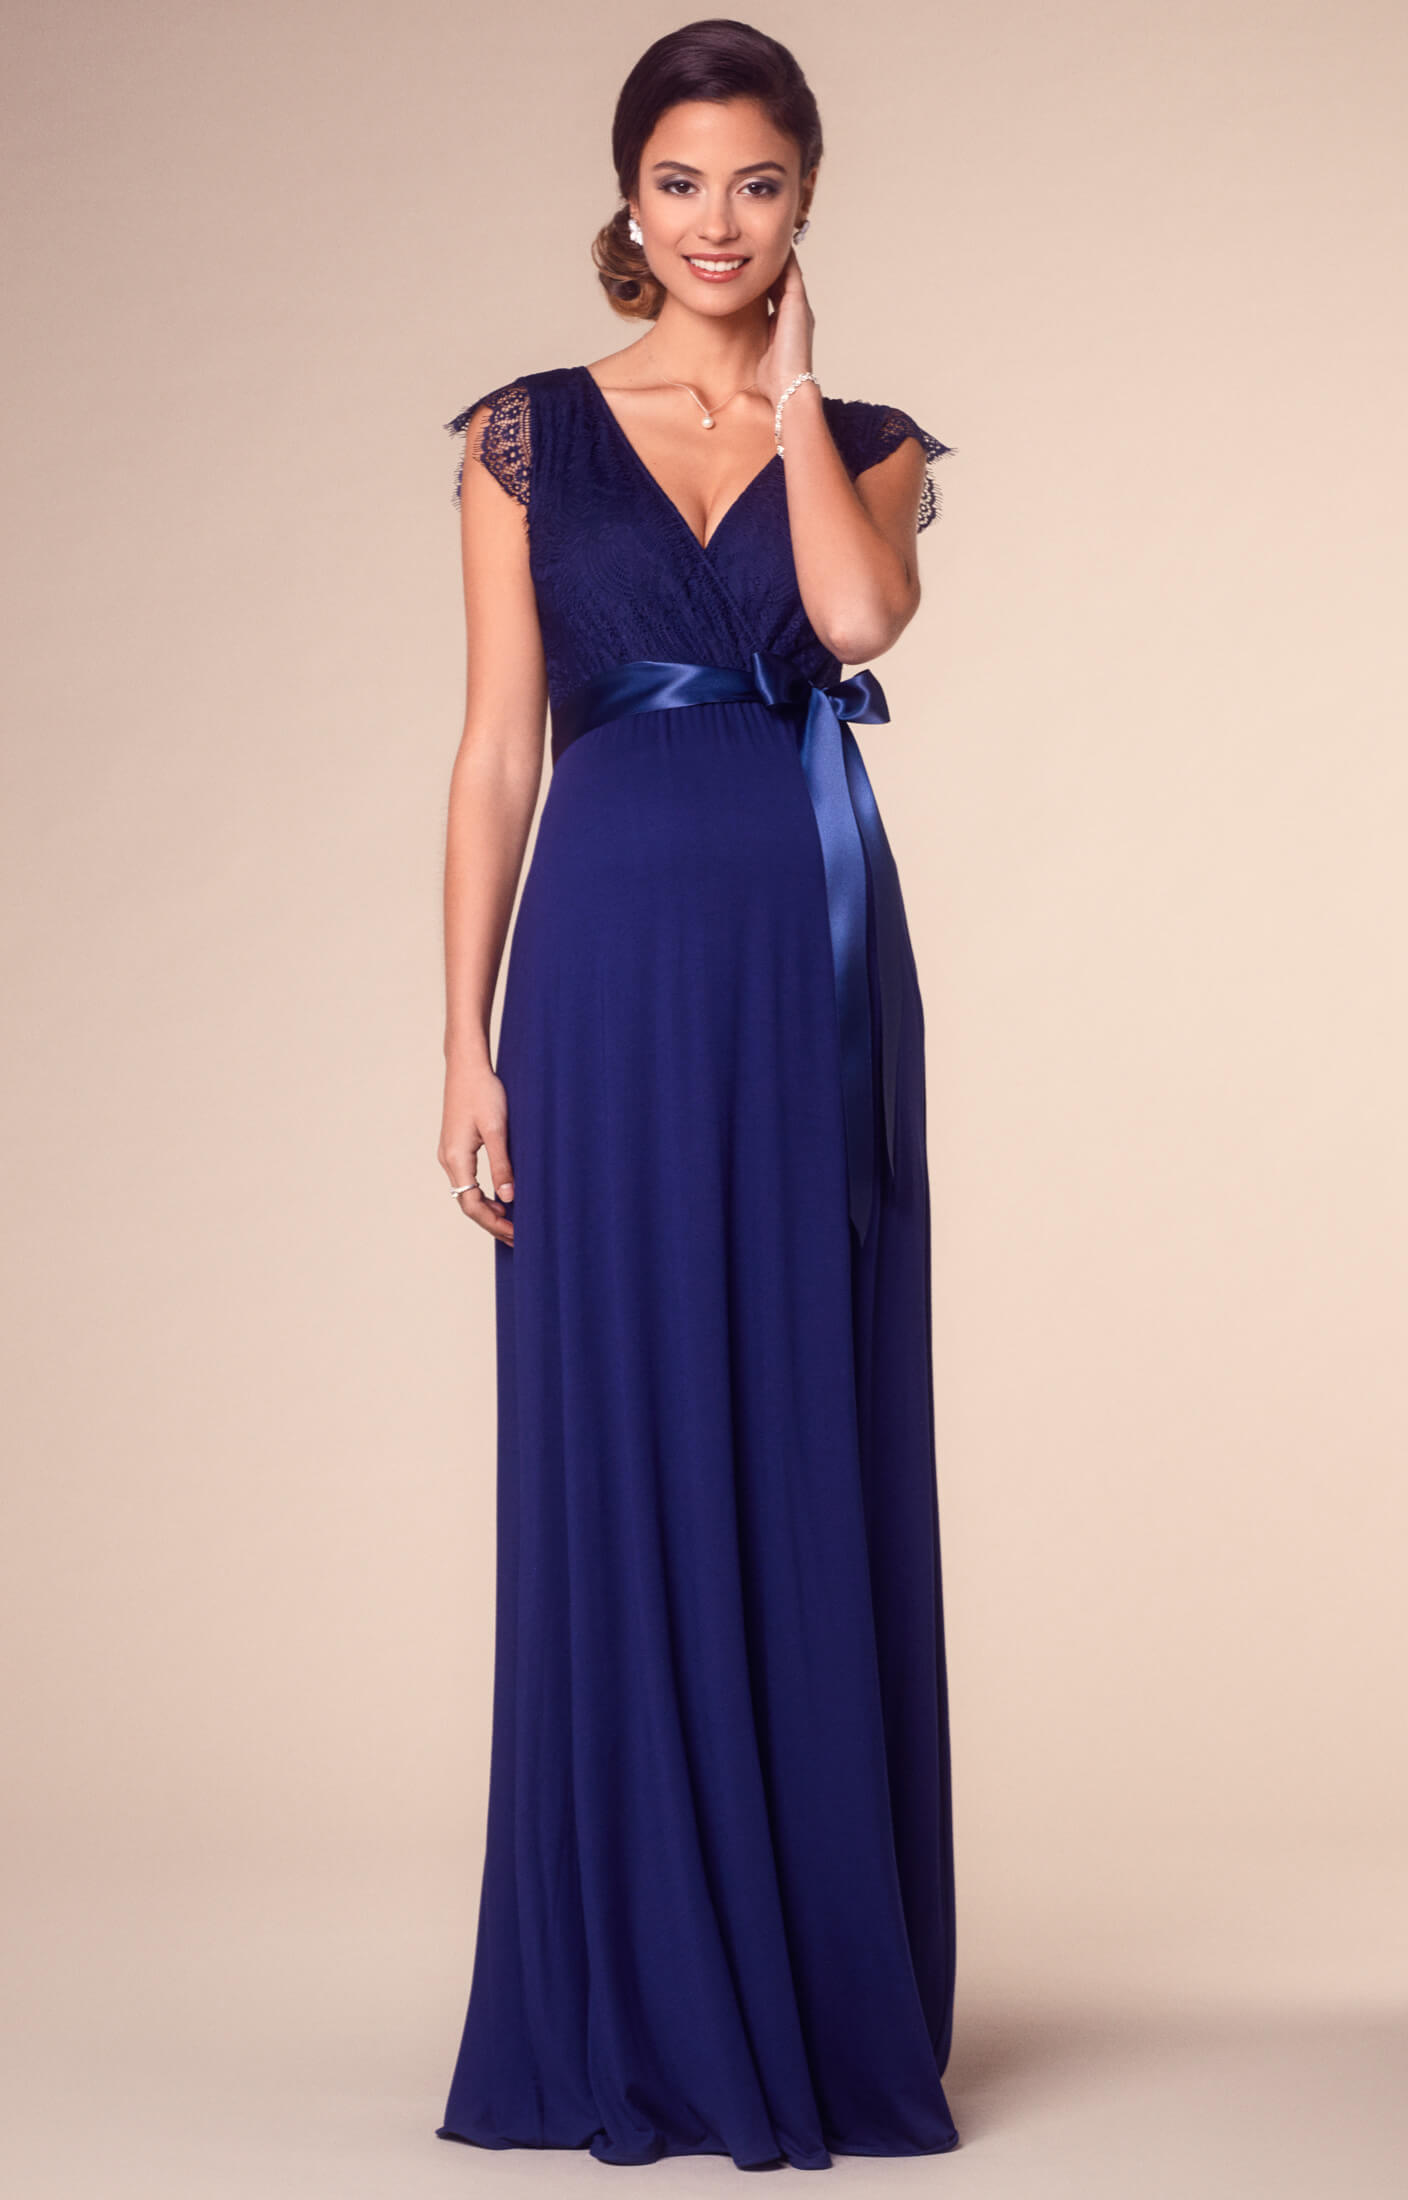 und Blau Umstandshochzeitskleider, lang by Partykleidung Indigo Rosa Rose in - Umstandskleid DE Abendgarderobe Tiffany